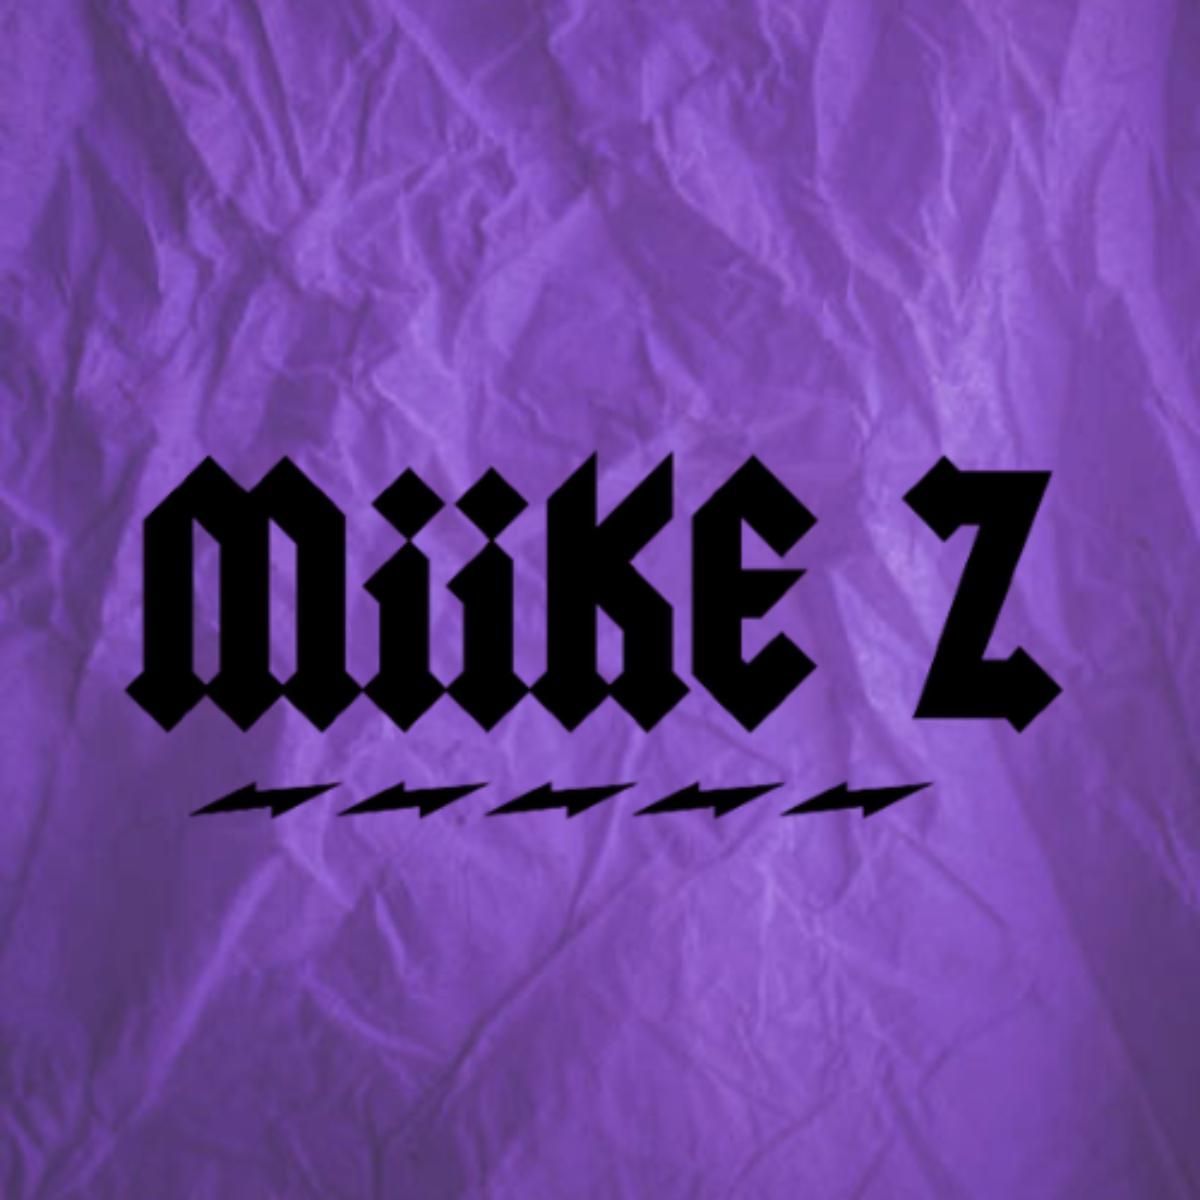 Miike Z